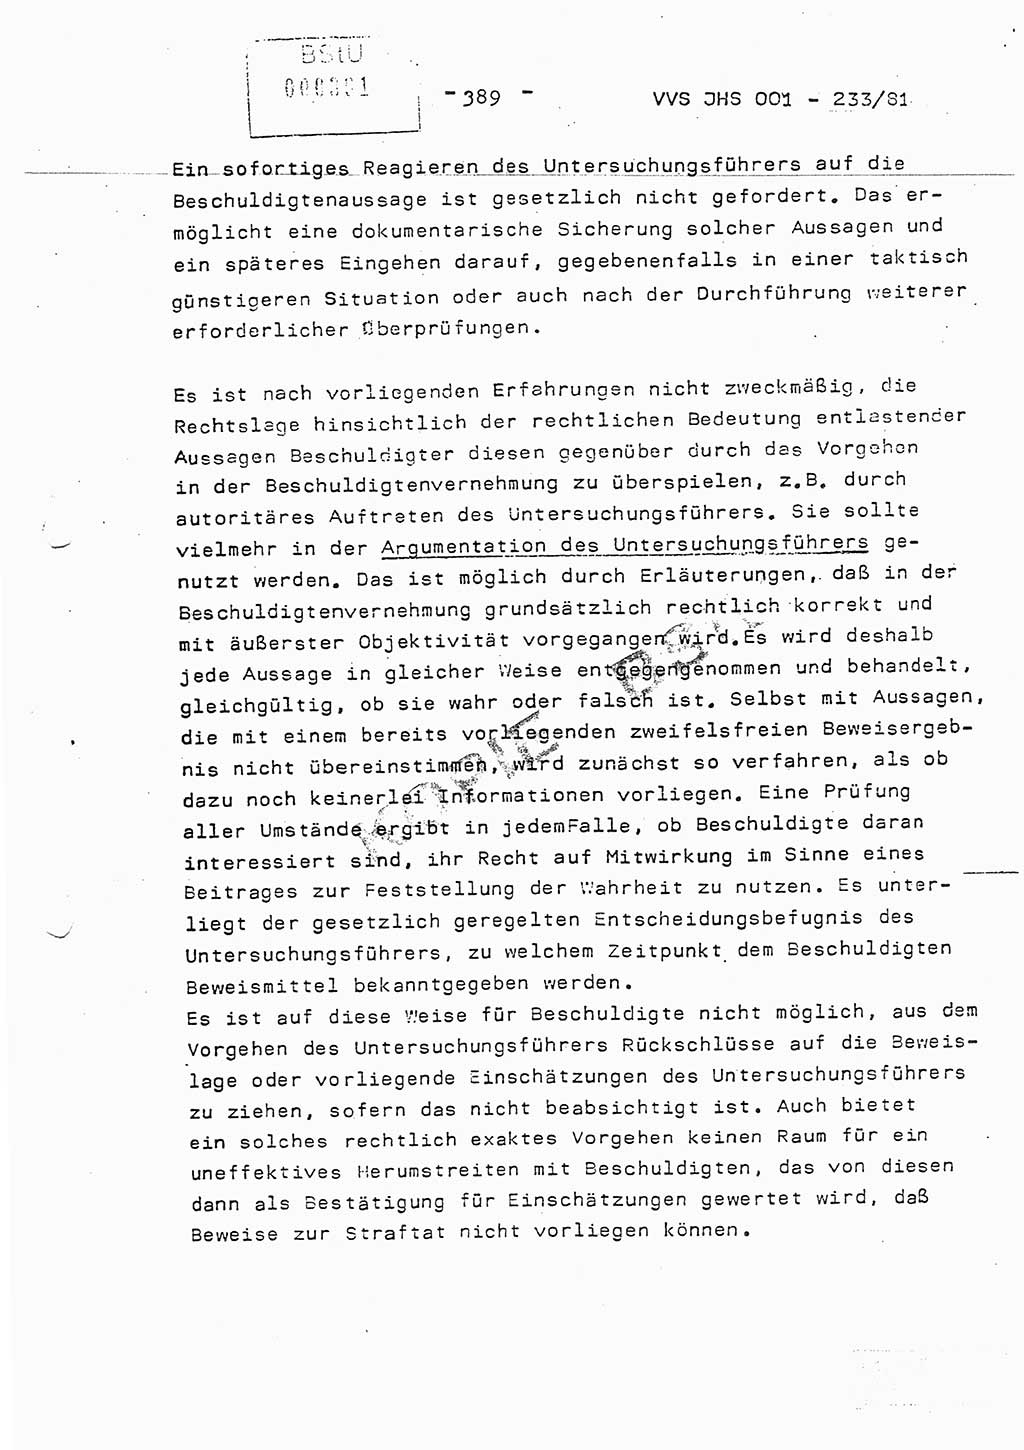 Dissertation Oberstleutnant Horst Zank (JHS), Oberstleutnant Dr. Karl-Heinz Knoblauch (JHS), Oberstleutnant Gustav-Adolf Kowalewski (HA Ⅸ), Oberstleutnant Wolfgang Plötner (HA Ⅸ), Ministerium für Staatssicherheit (MfS) [Deutsche Demokratische Republik (DDR)], Juristische Hochschule (JHS), Vertrauliche Verschlußsache (VVS) o001-233/81, Potsdam 1981, Blatt 389 (Diss. MfS DDR JHS VVS o001-233/81 1981, Bl. 389)